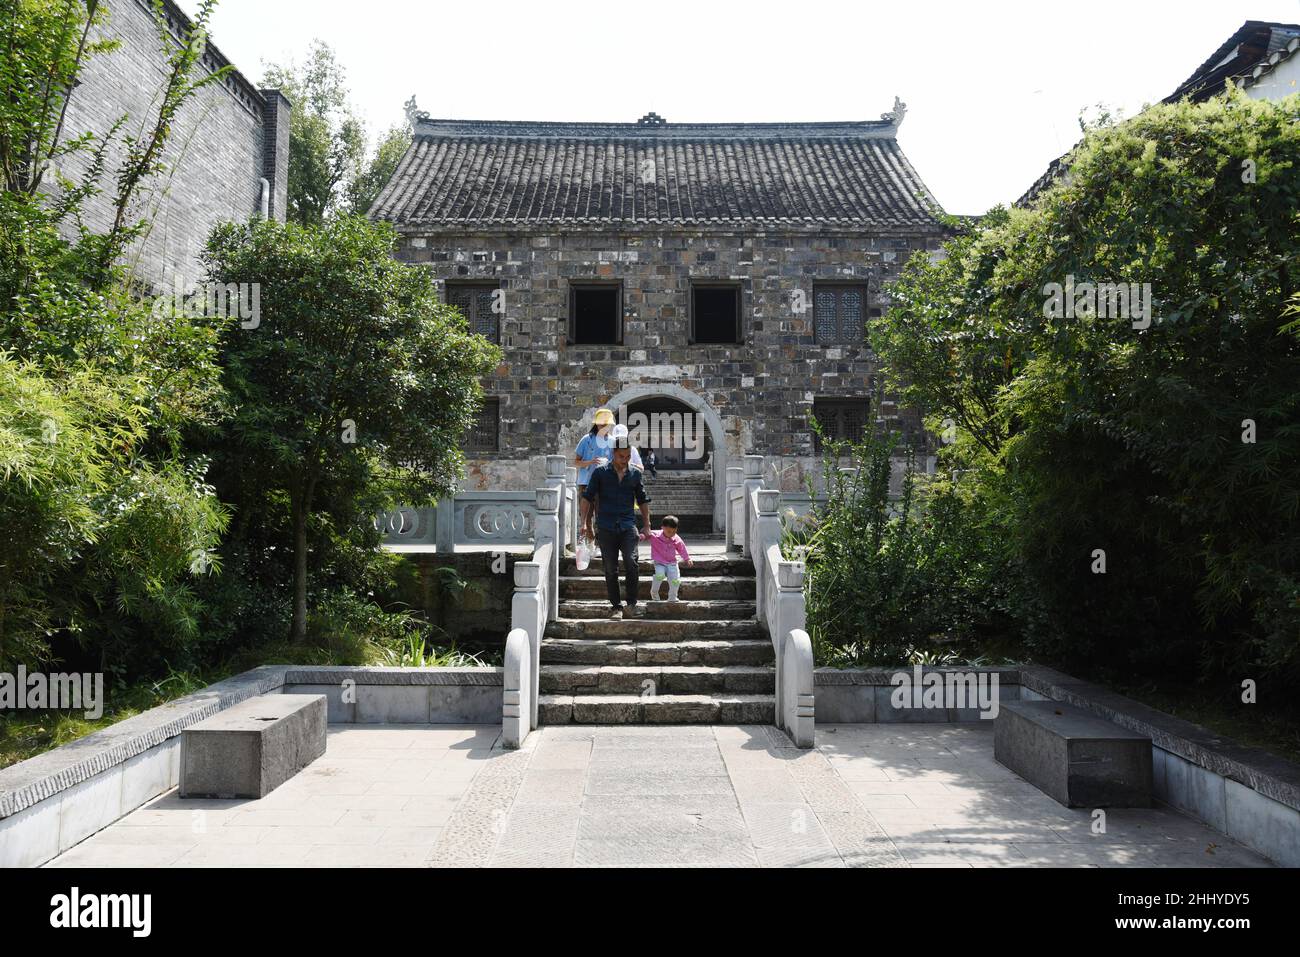 Guiyang, Guiyang, Cina. 26th Jan 2022. L'antica città di Qingyan, una delle quattro antiche città di Guizhou, si trova nel sobborgo meridionale della città di Guiyang, provincia di Guizhou. Fu costruito nel 10th anno di Hongwu della Dinastia Ming (1378). Originariamente era una fortezza militare. Gli antichi edifici delle dinastie Ming e Qing, dal design squisito e dalla squisita lavorazione, sono attraversati nella città antica, con templi, padiglioni, colonne dipinte e travi intagliate, angoli volanti e doppie gronde. L'antica città è piena di gente e cultura, tra cui la celebrità storica Zhou Yuh Foto Stock